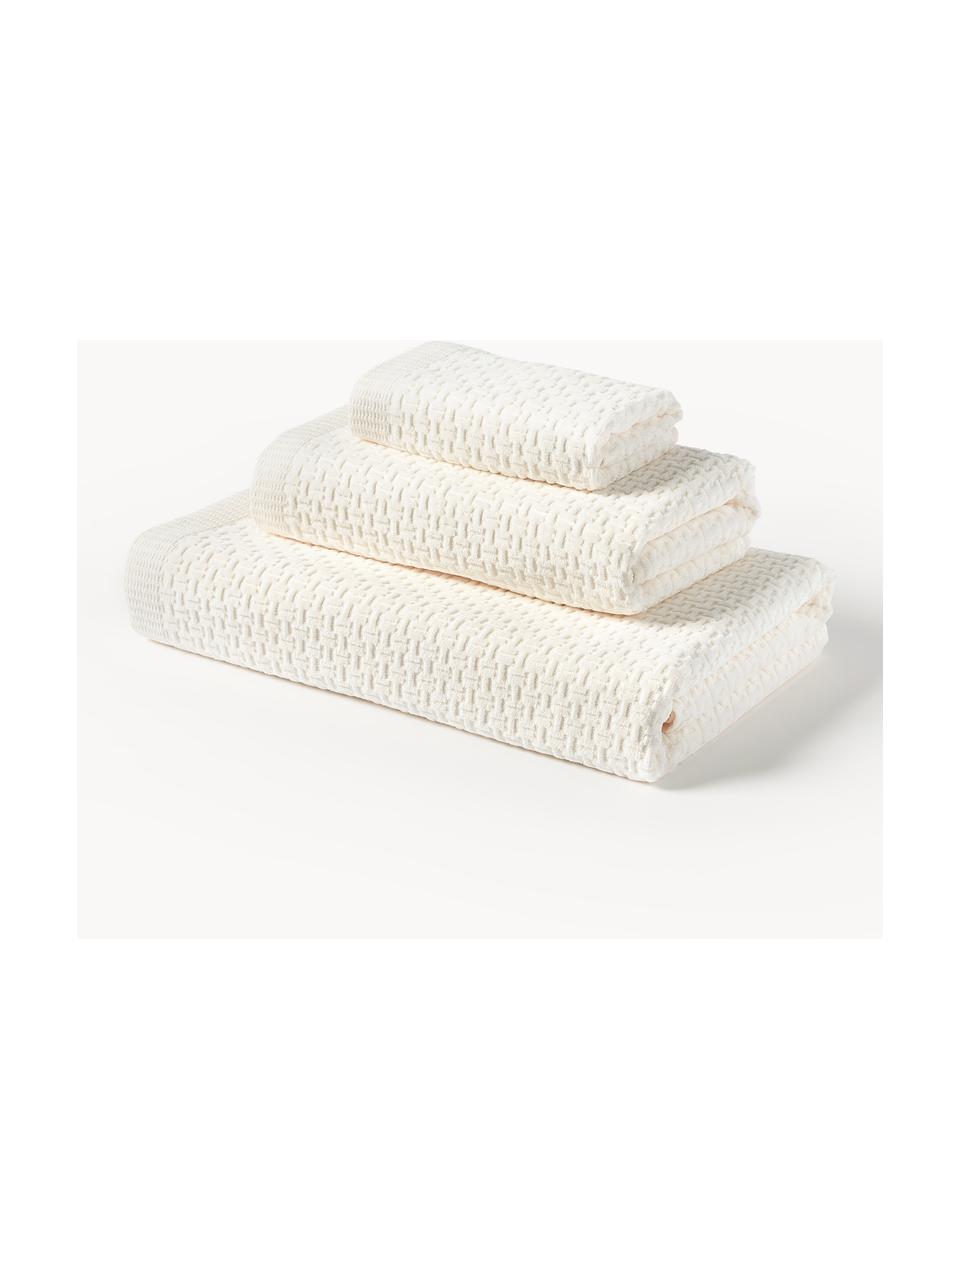 Lot de serviettes de bain Niam, 3 élém., Blanc crème, 3 éléments (1 serviette invité, 1 serviette de toilette et 1 drap de bain)